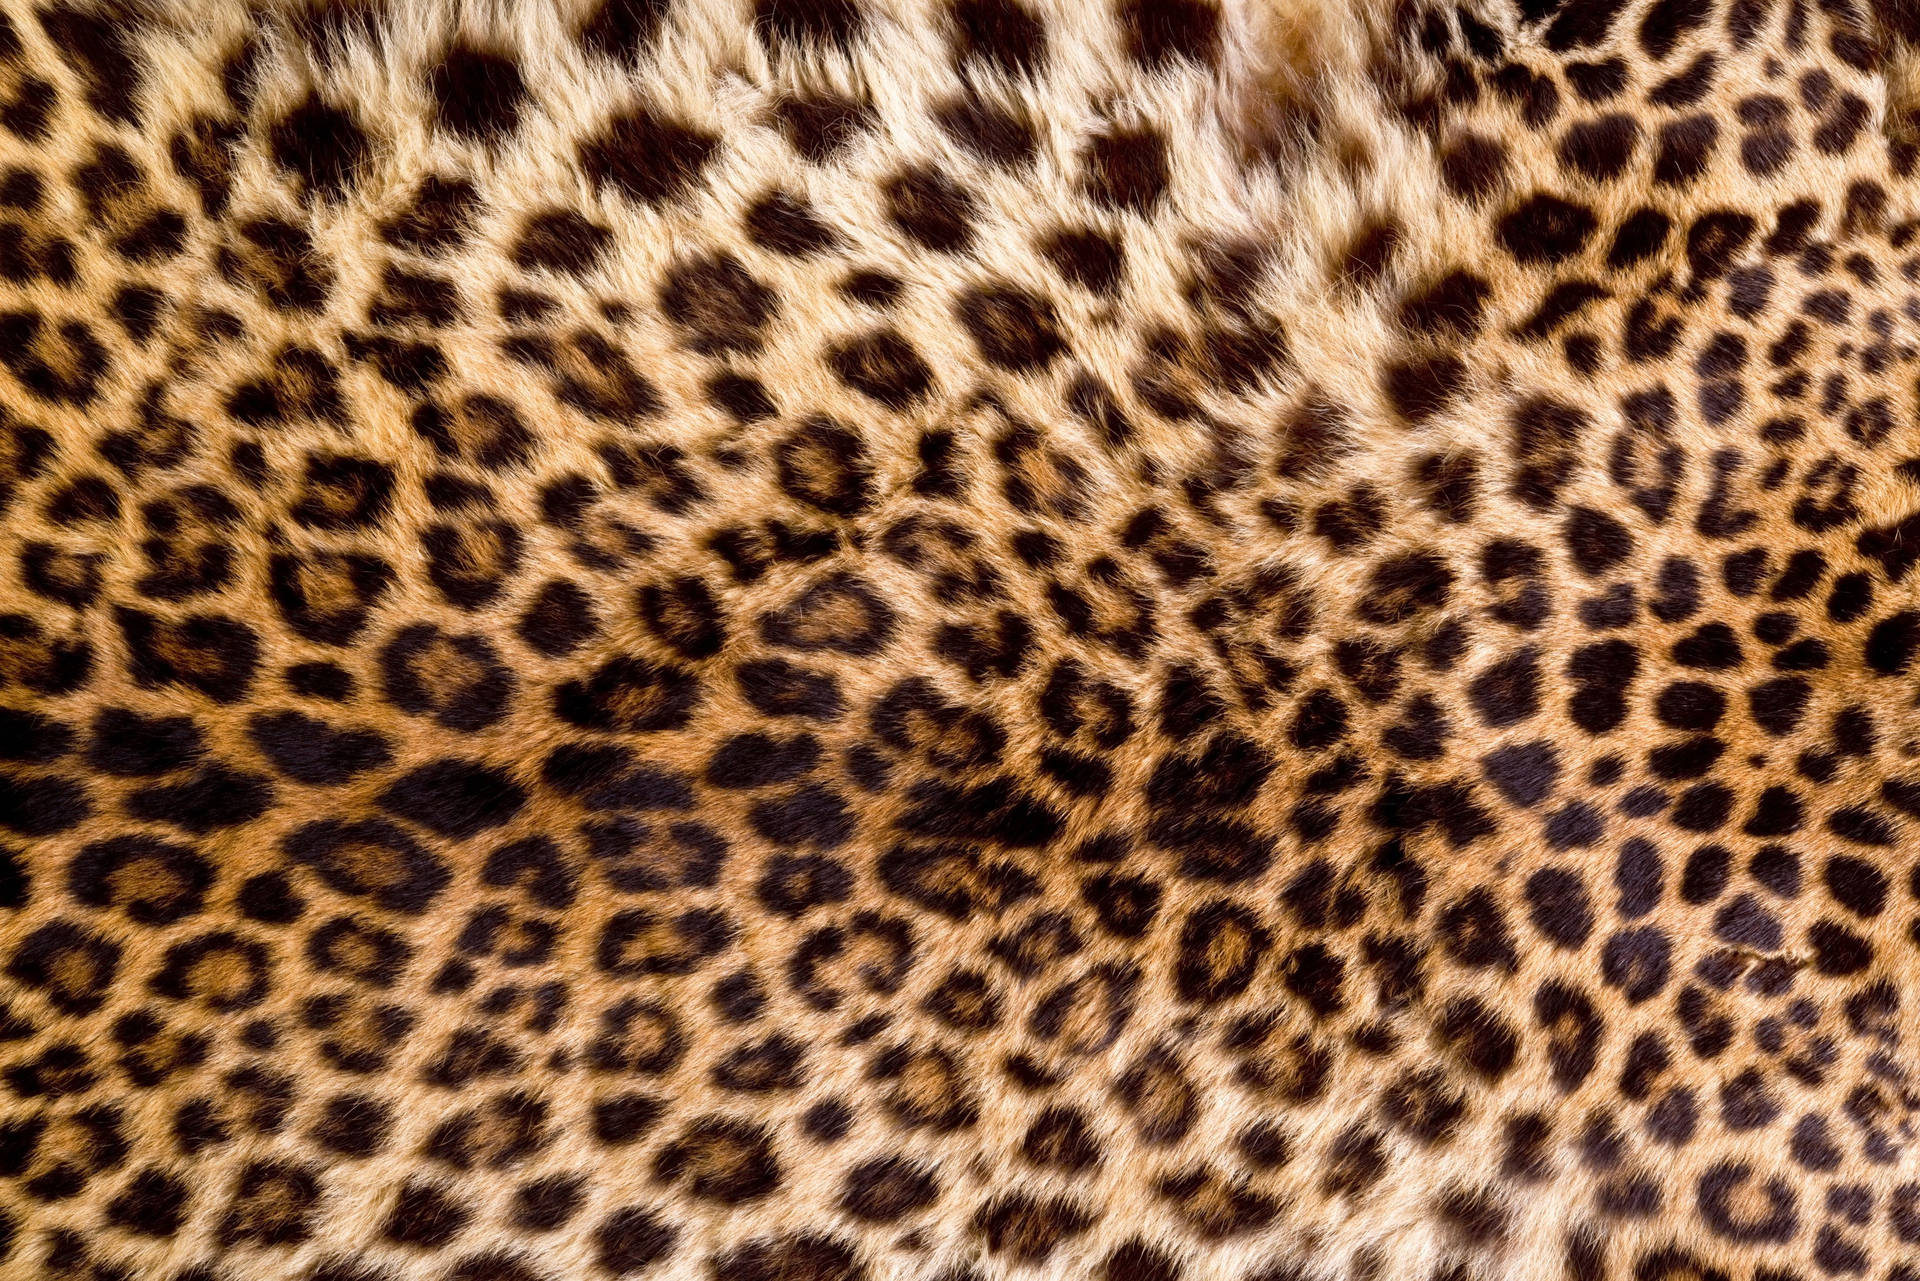 Fondode Pantalla Con Estampado De Piel De Leopardo. Fondo de pantalla